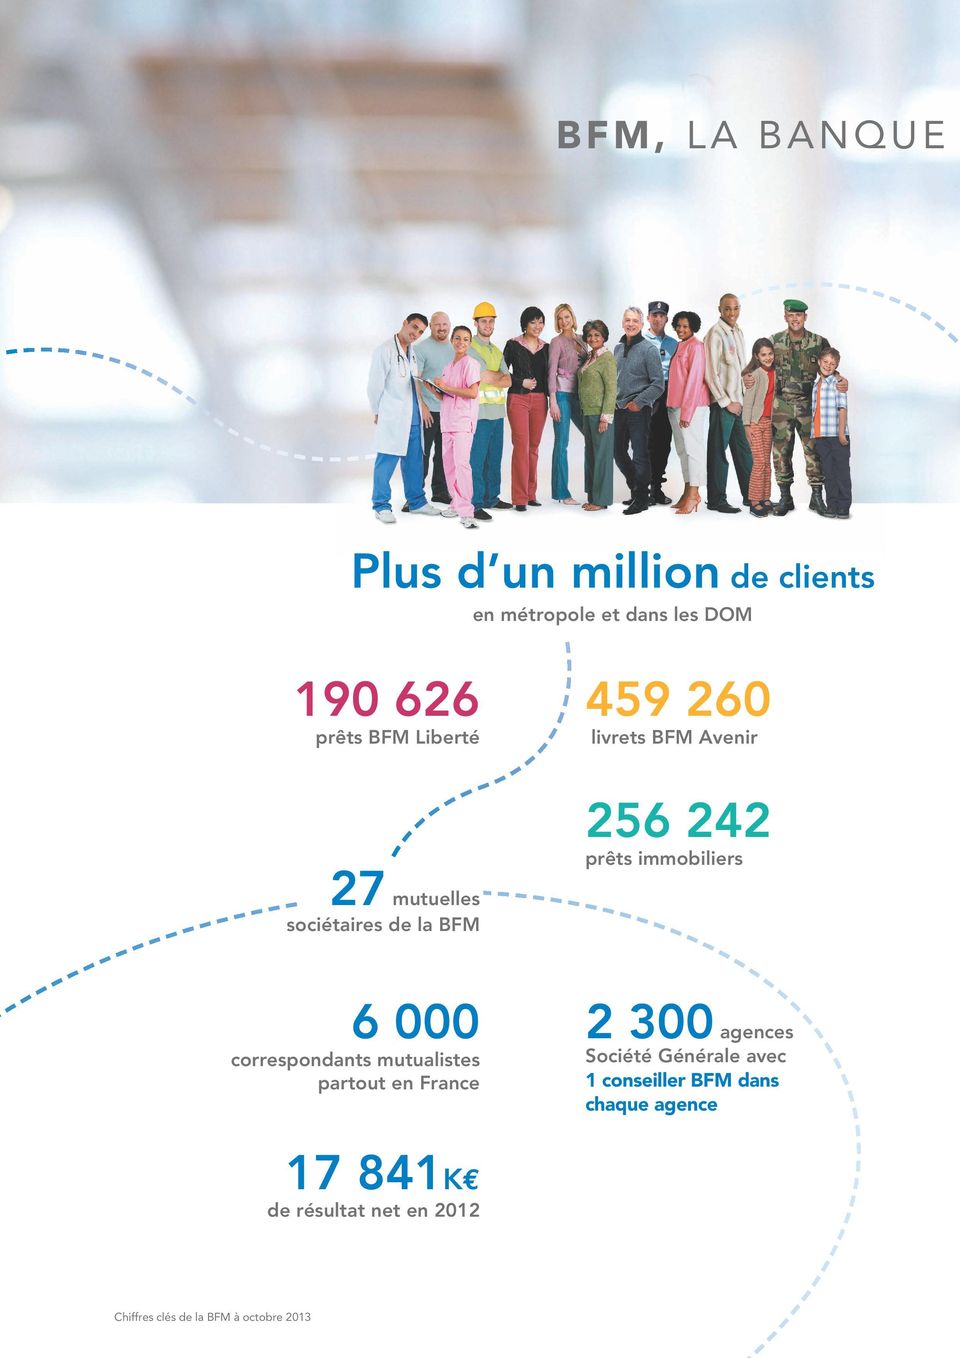 BFM 6 000 correspondants mutualistes partout en France 2 300 agences Société Générale avec 1